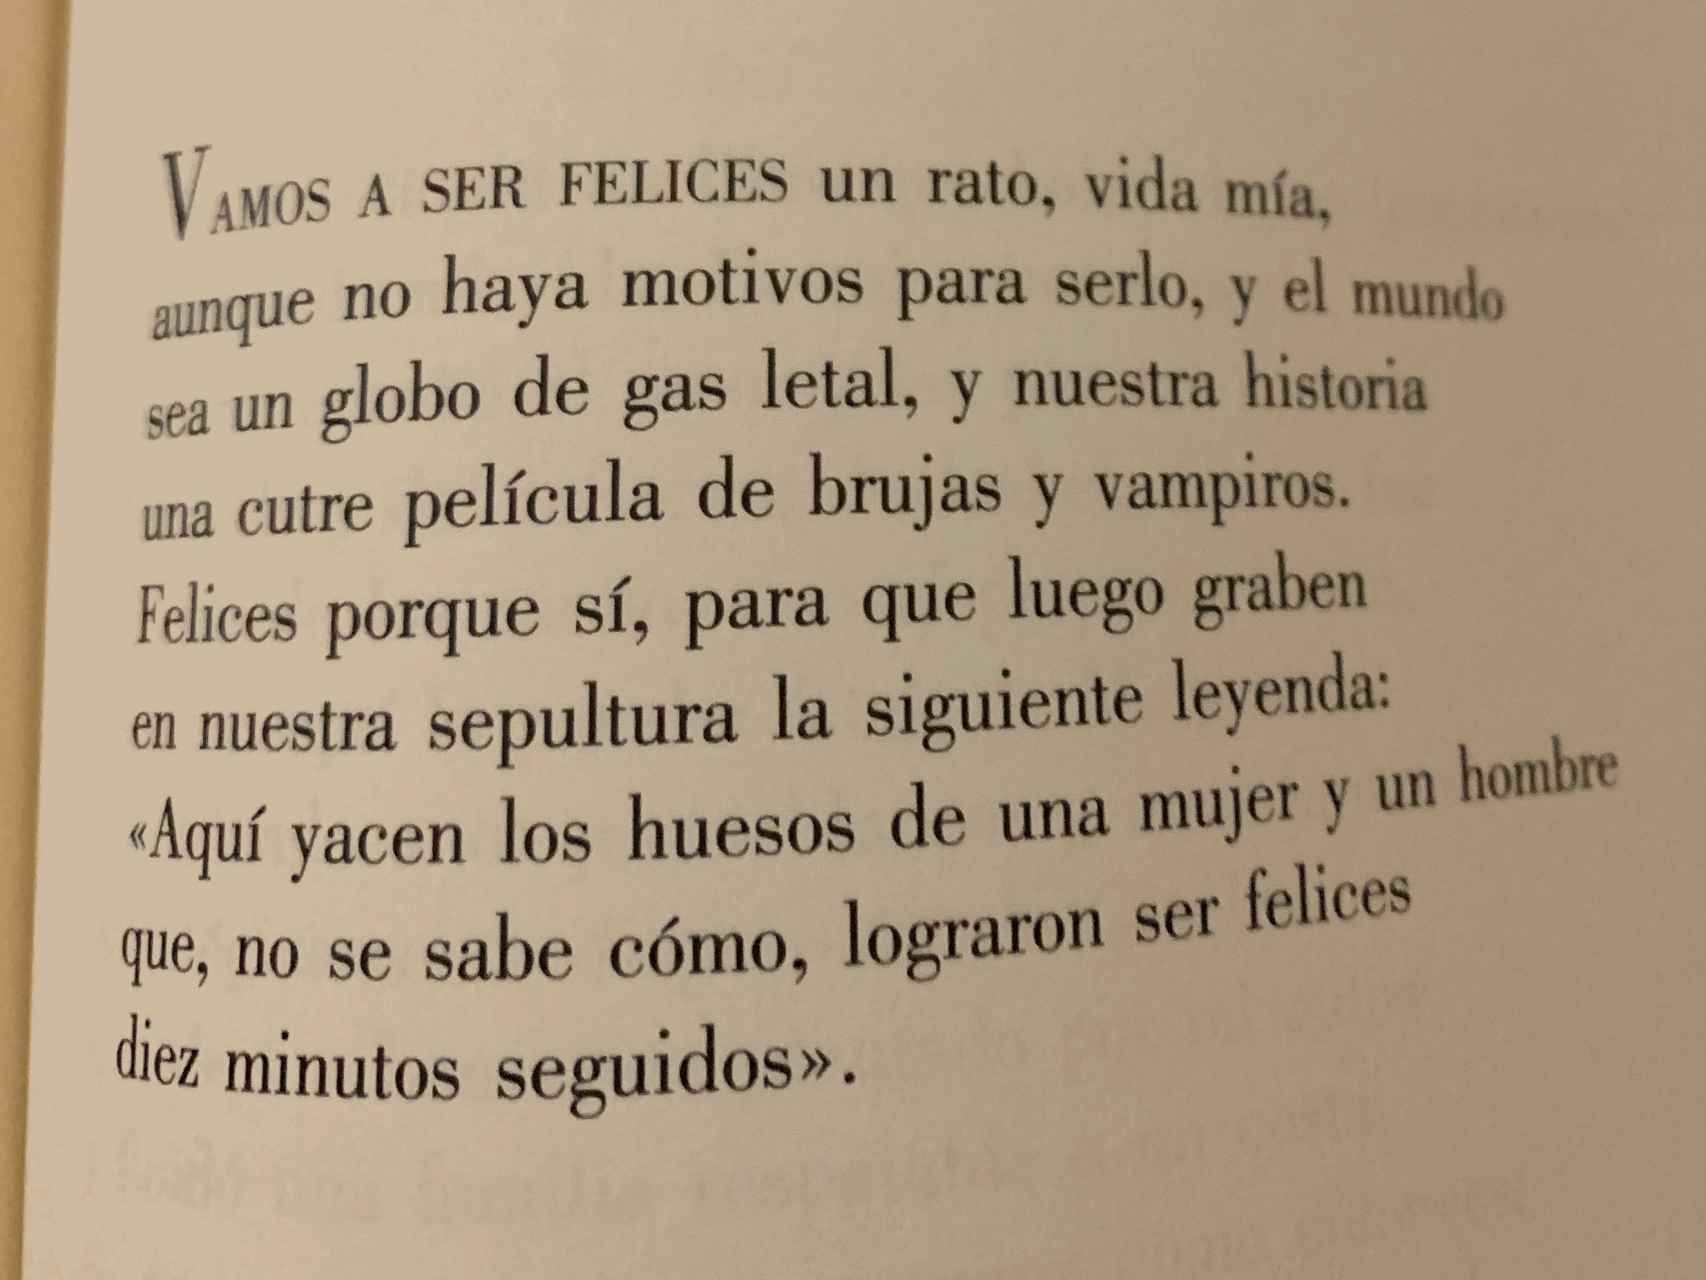 Vamos a ser felices, un poema de Luis Alberto de Cuenca.